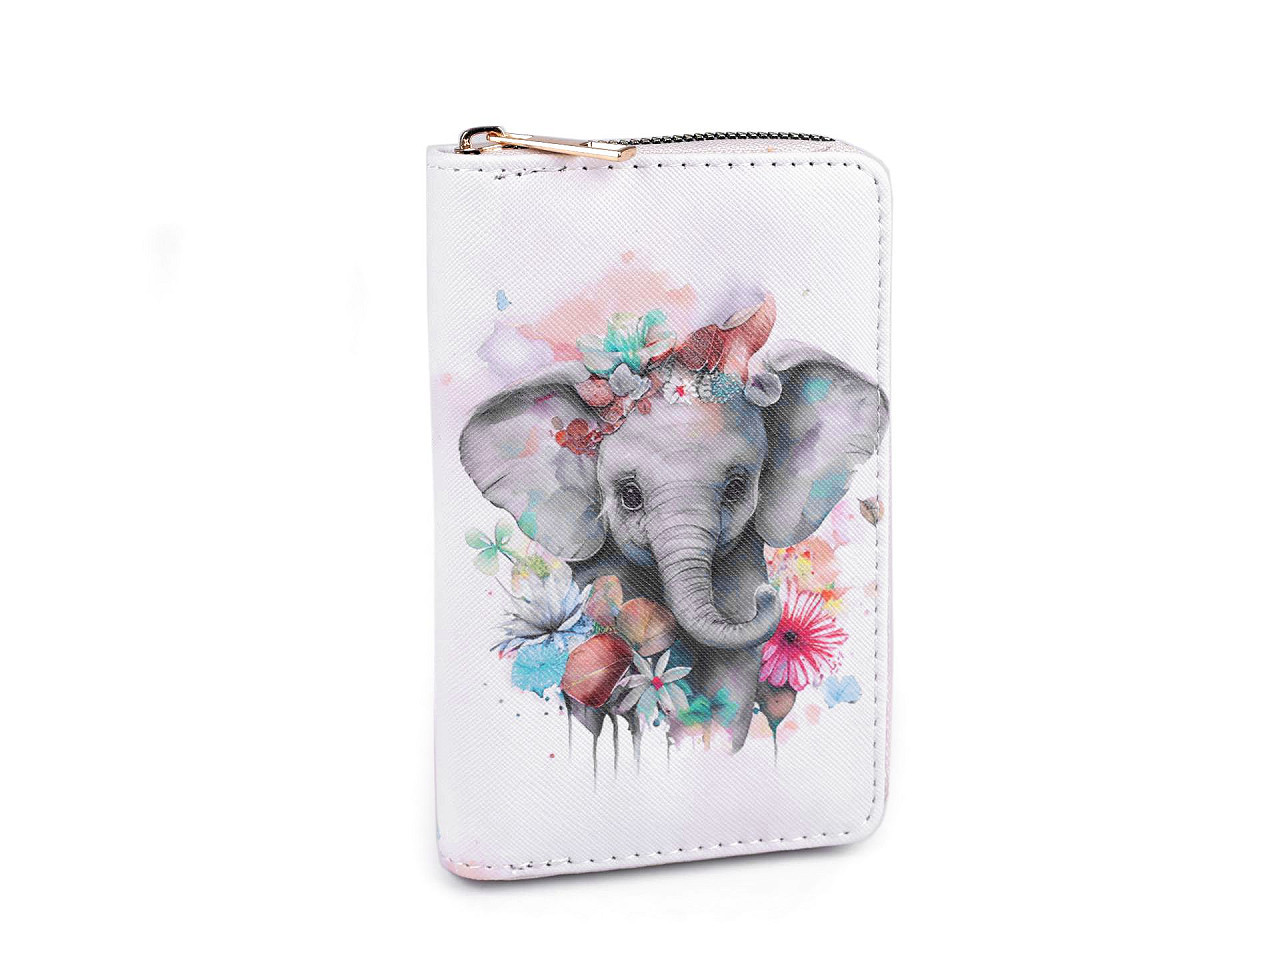 Dámská / dívčí peněženka slon 10x15,5 cm, barva 1 šedá světlá